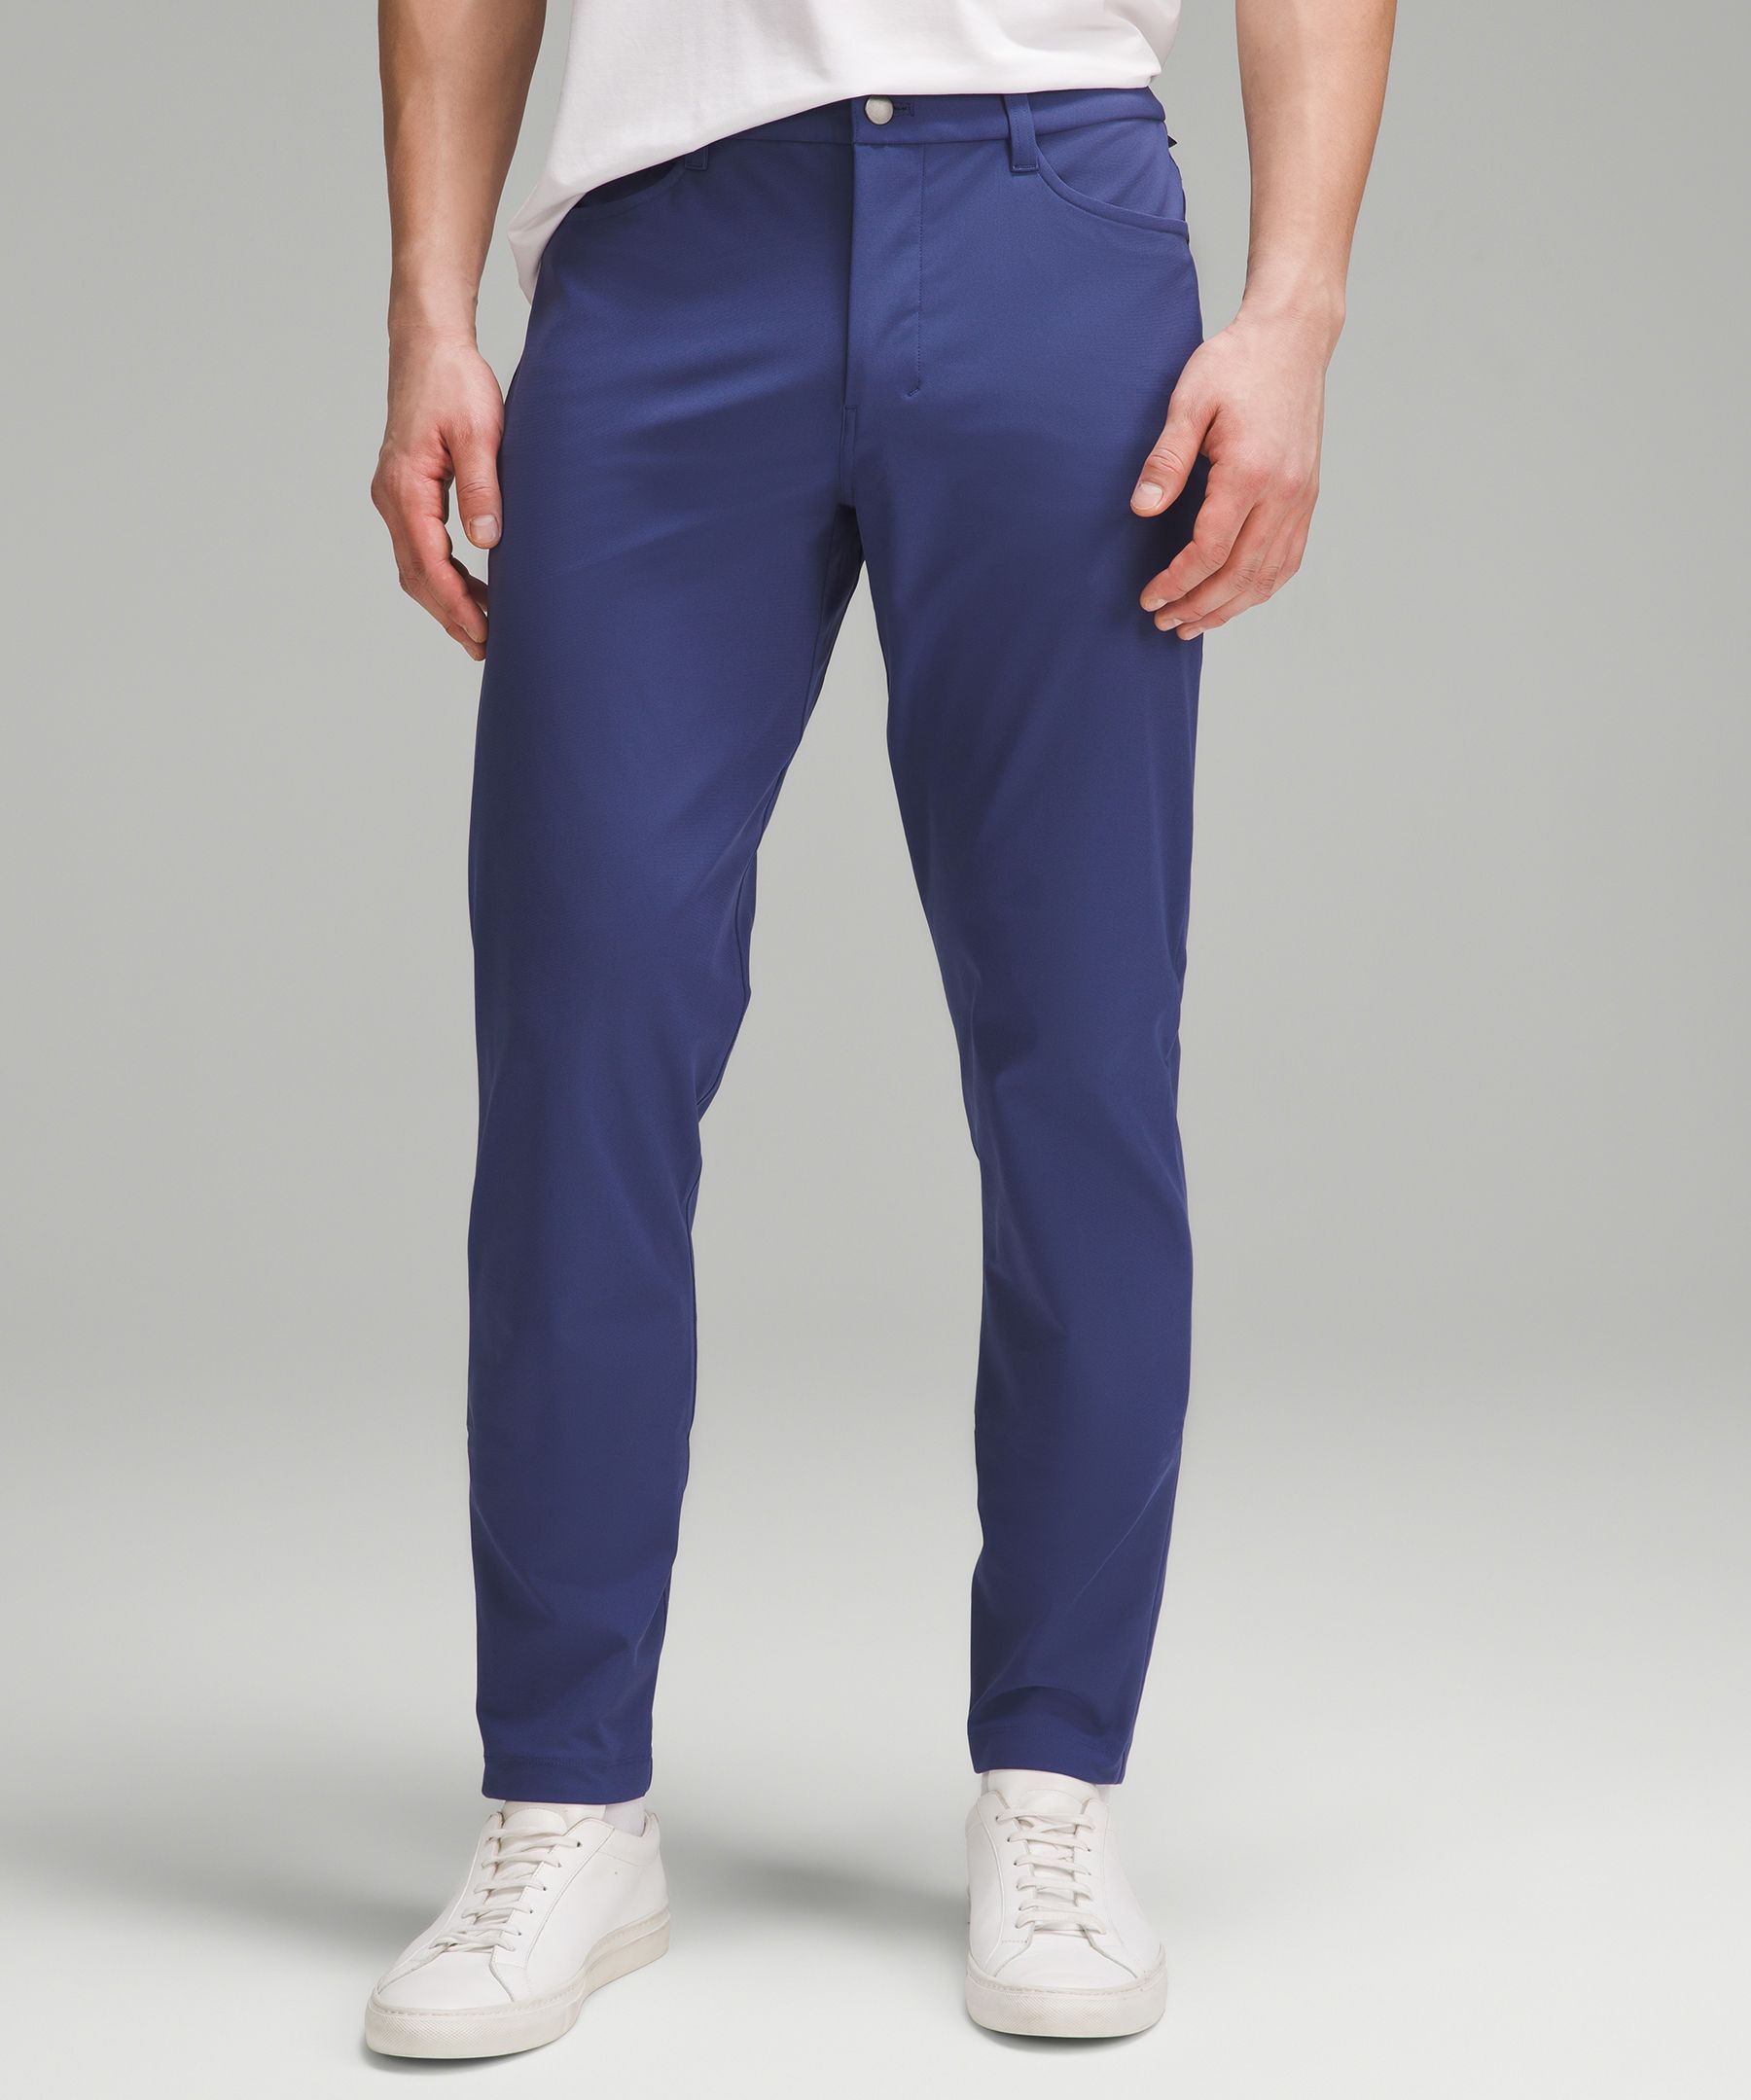 Lululemon athletica ABC Slim-Fit 5 Pocket Pant 37L *Warpstreme, Men's  Trousers